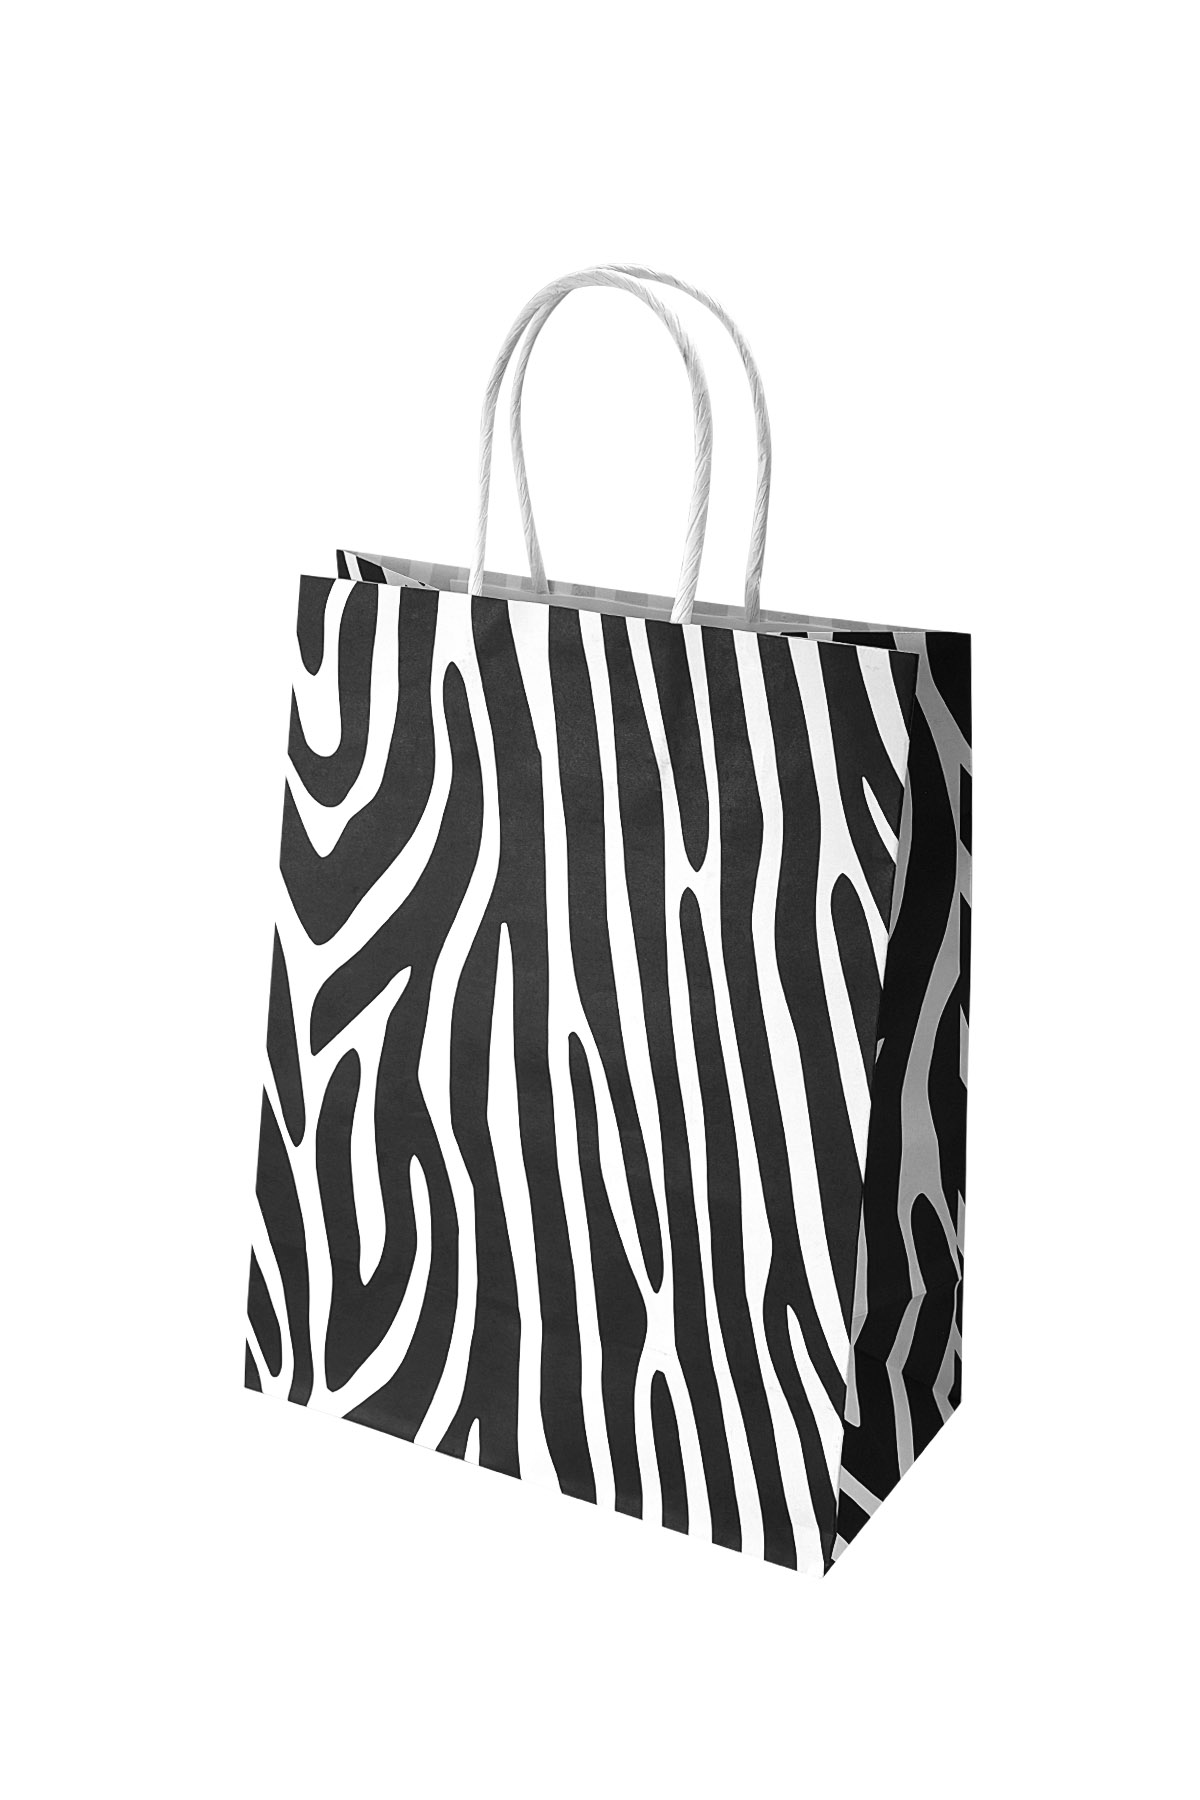 Tüten Zebra 50 Stück - schwarz/weißes Papier h5 